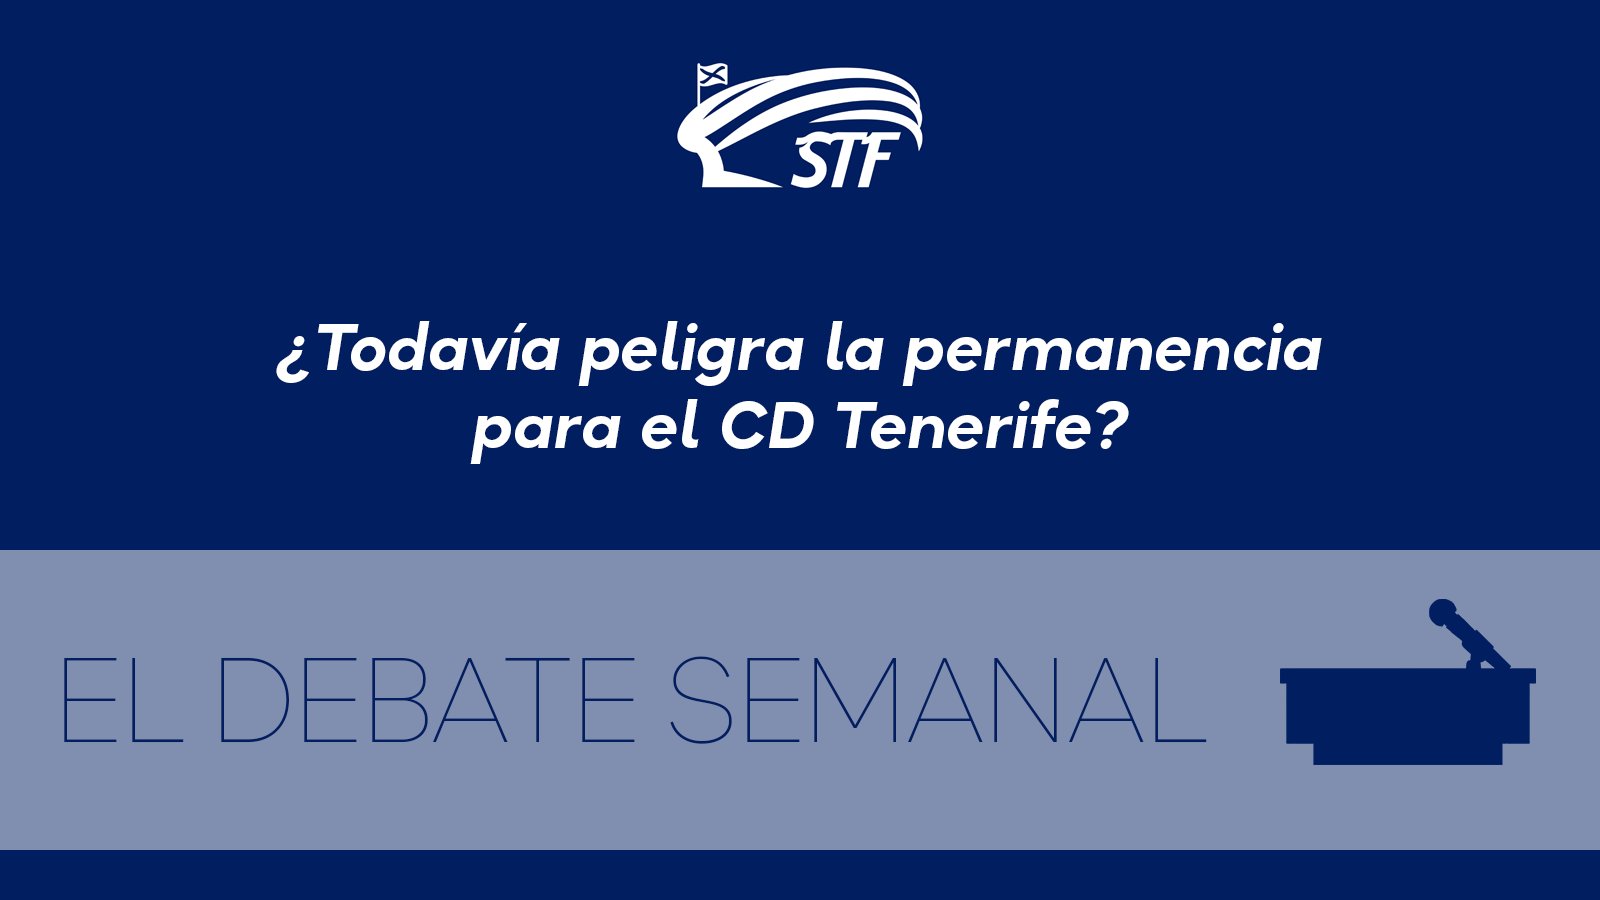 El Debate Semanal: ¿Todavía peligra la permanencia para el CD Tenerife? El 69,2% dice no